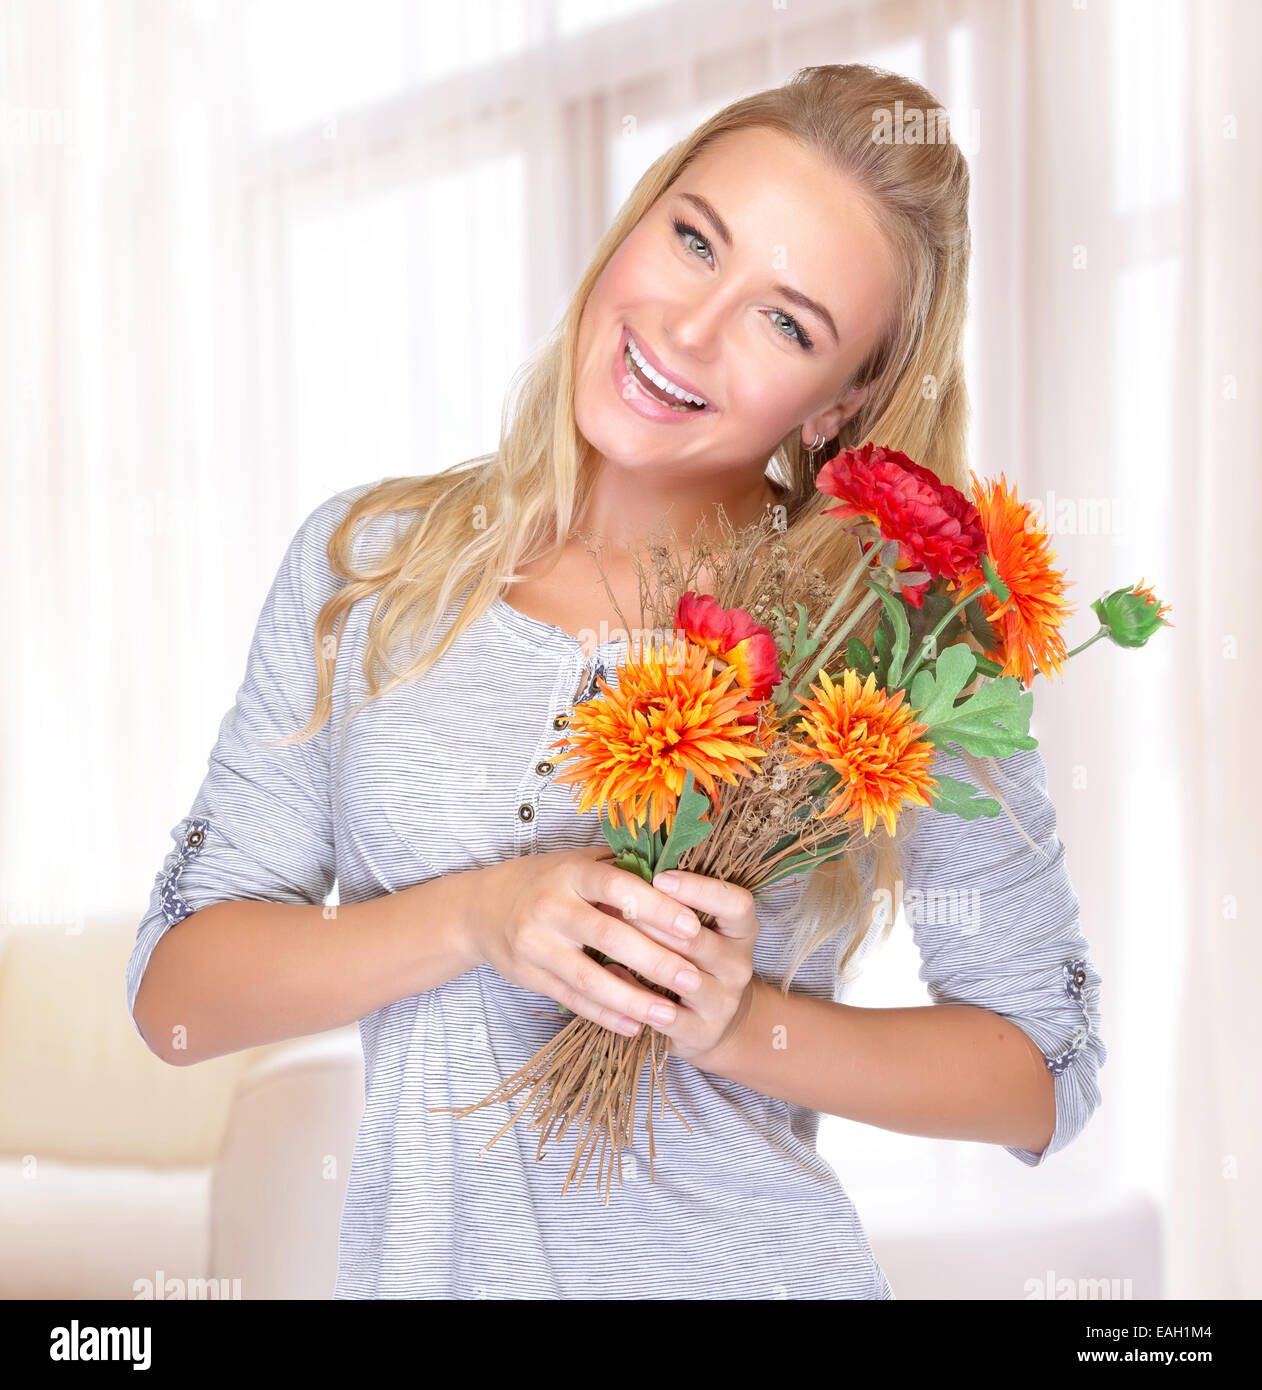 Porträt von fröhlich lächelnden Frau mit Blumen Blumenstrauß in der Hand, Herbstferien zu Hause zu verbringen, süßen Gegenwart genießen Stockfoto